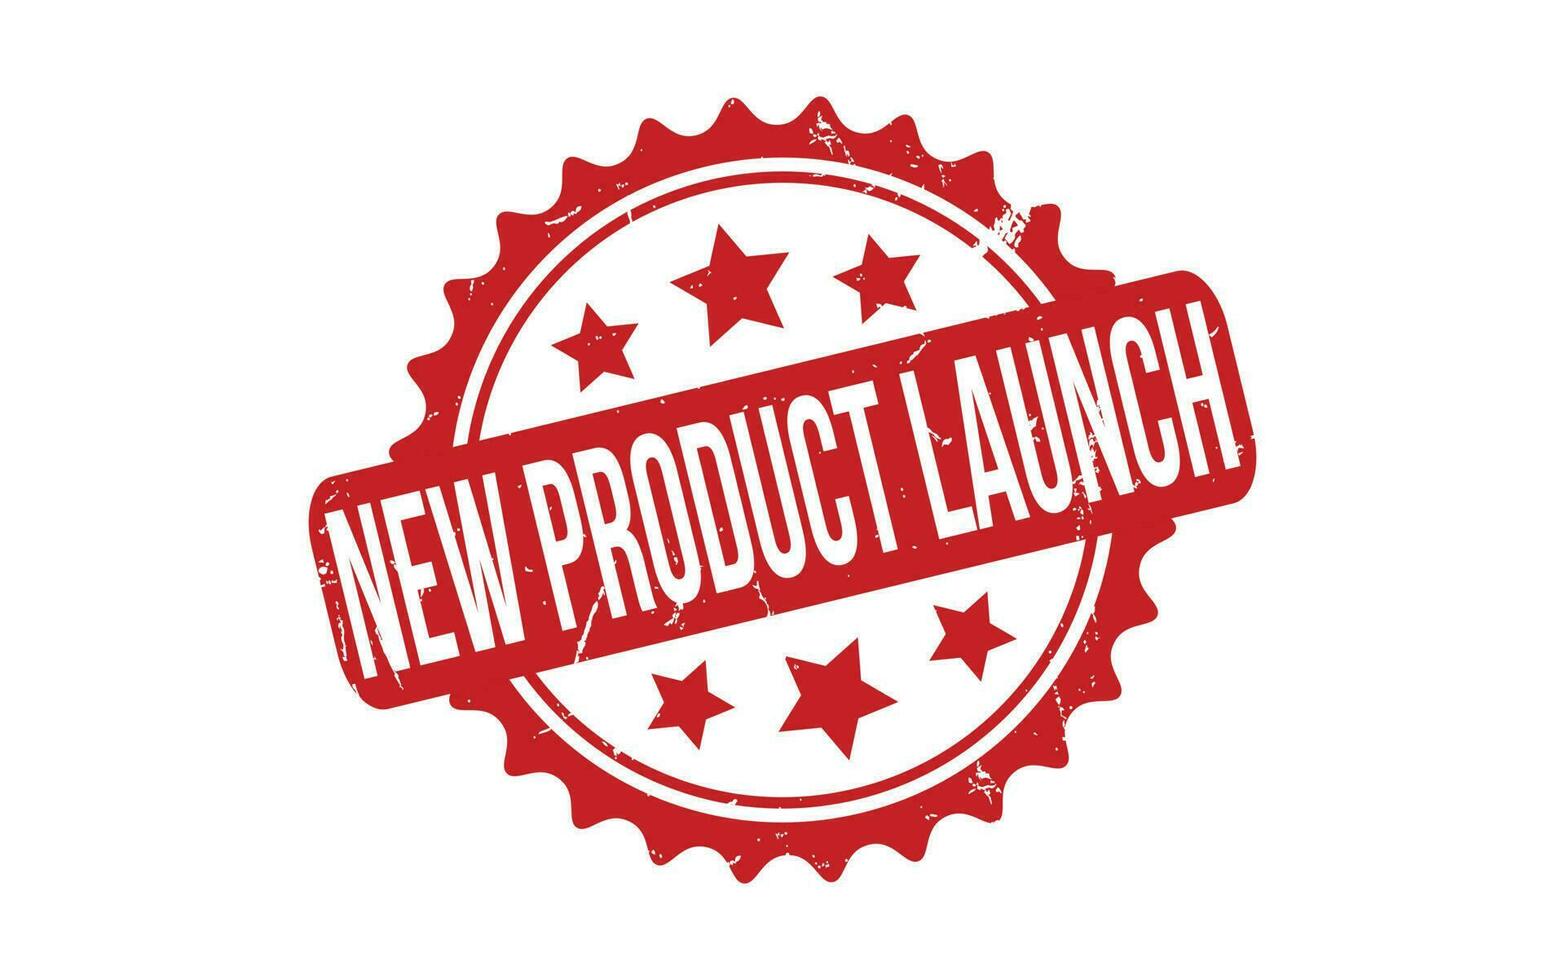 nieuw Product lancering rubber grunge postzegel zegel vector